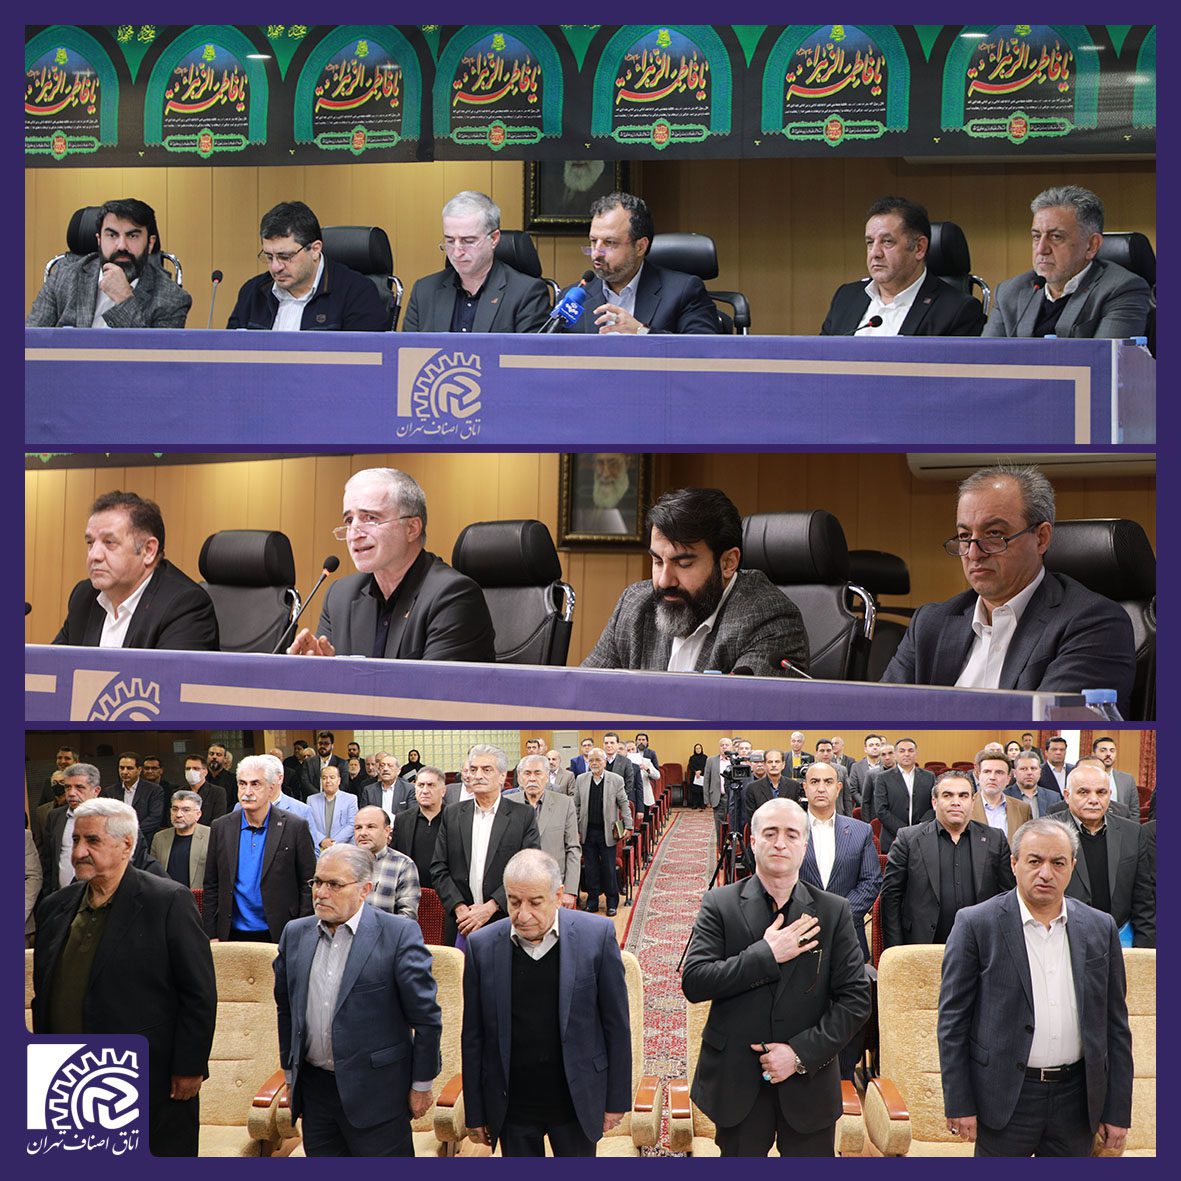 دهمین اجلاس ماهانه اتاق اصناف تهران با حضور وزیر امور اقتصادی و دارایی برگزار شد